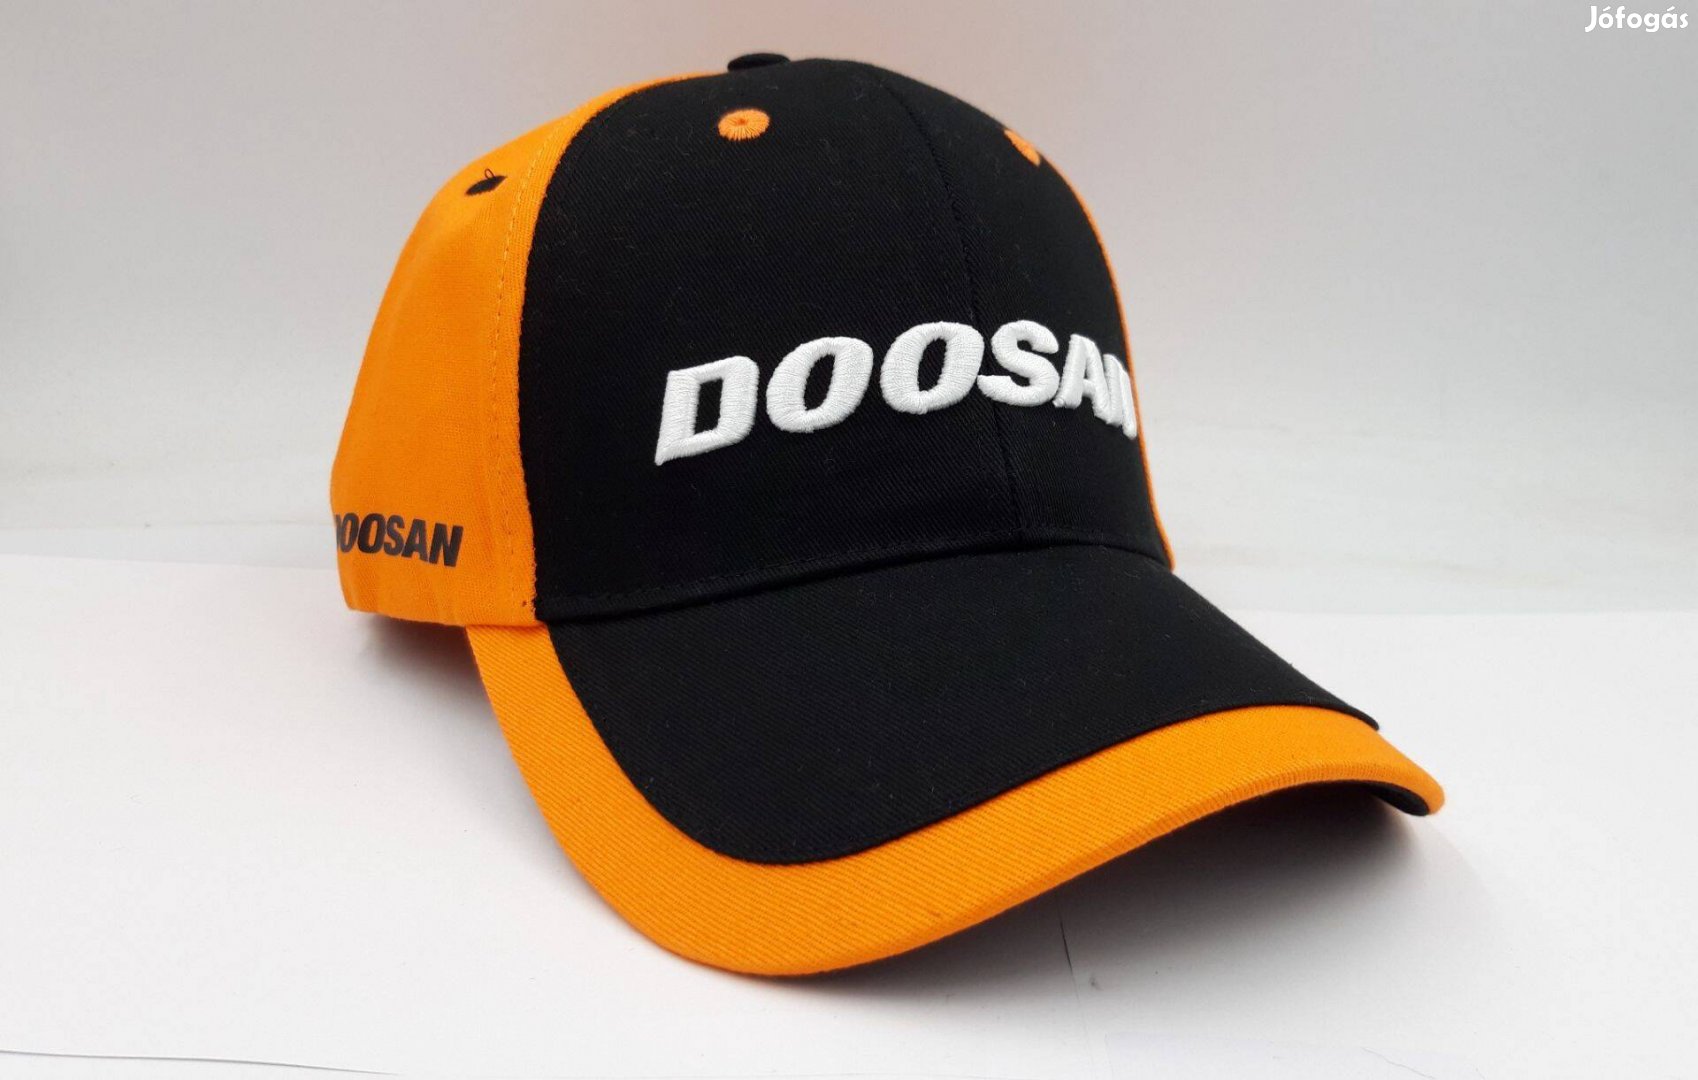 Doosan (Gép Szinű Narancs) baseball sapka - Eredeti-Original